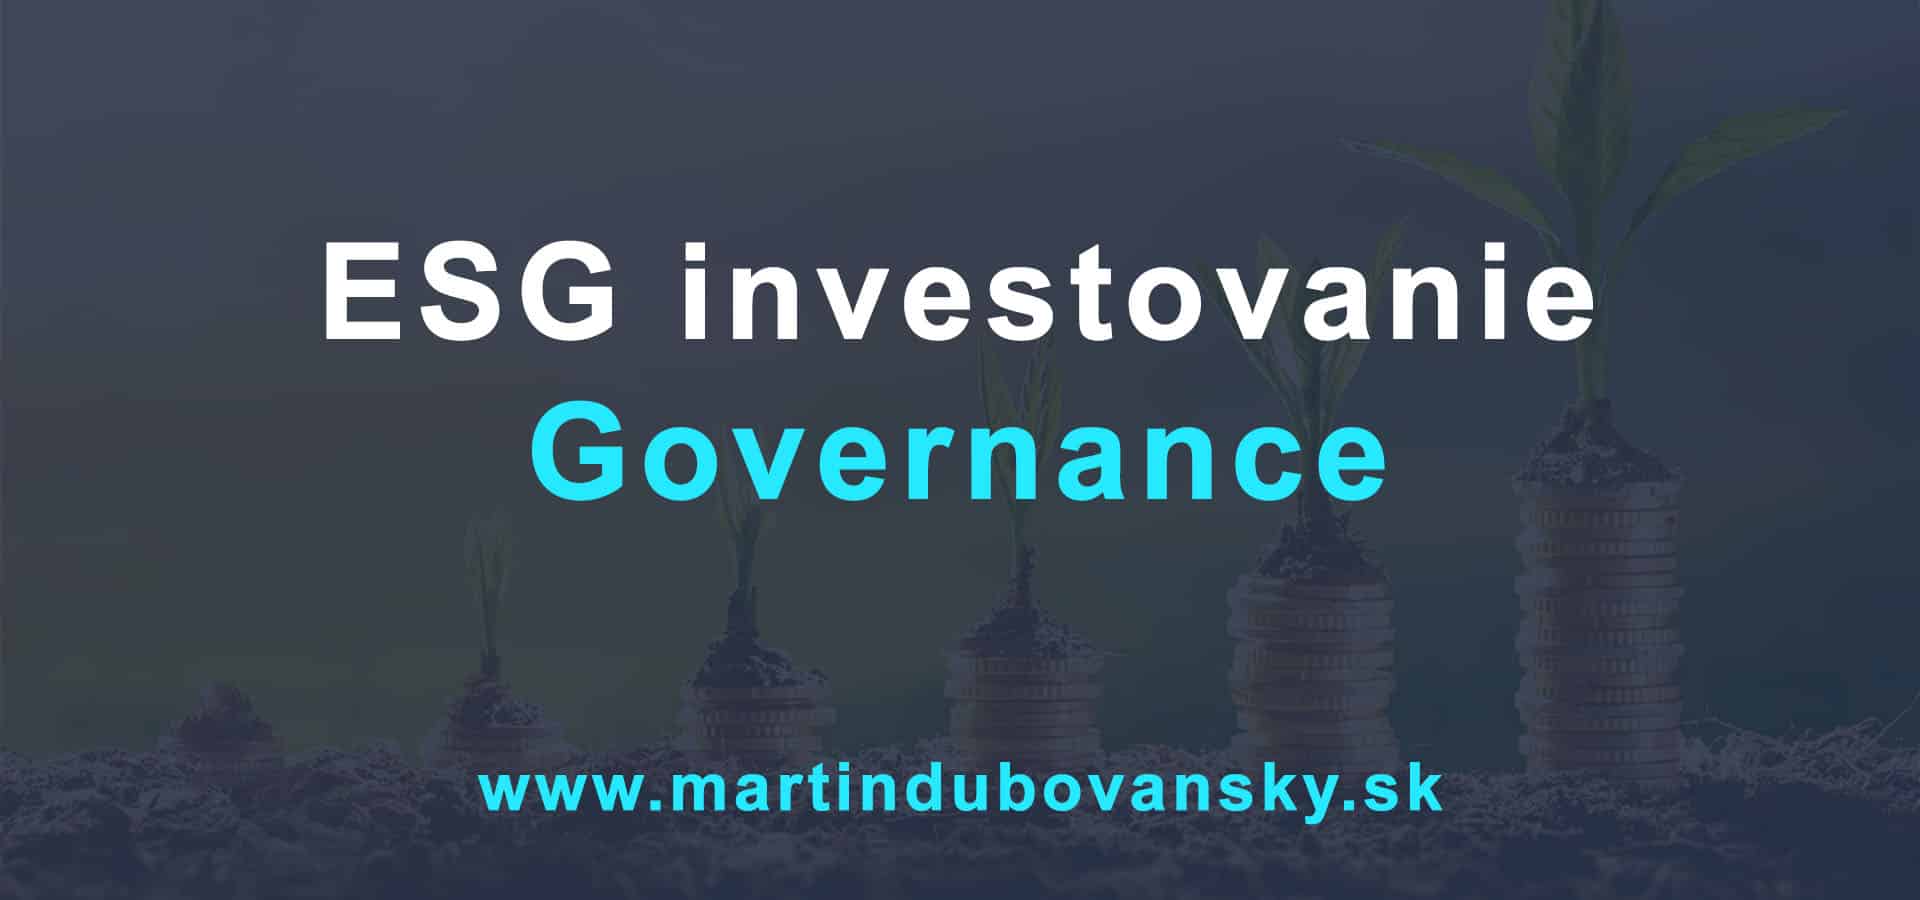 Investovanie do ESG governance